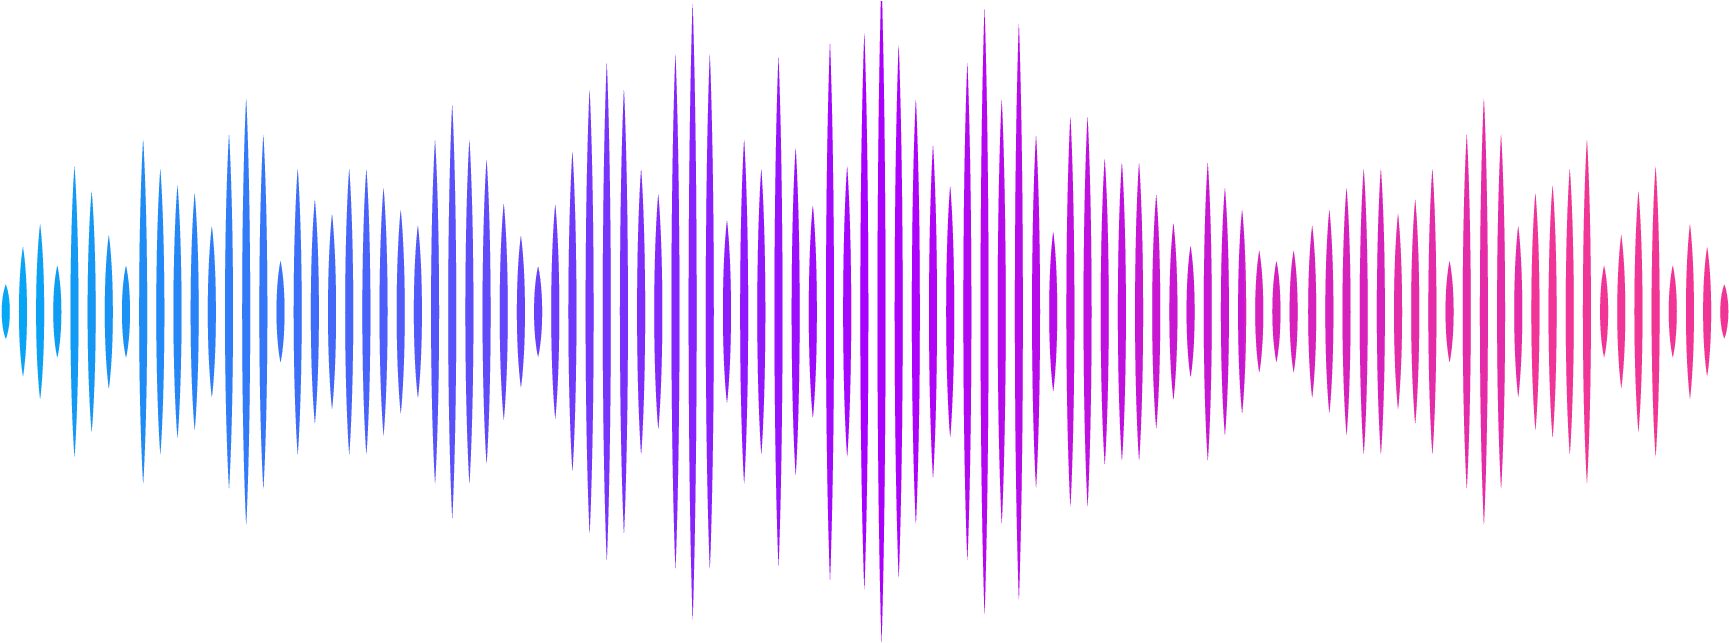 Голосовой без звука. Звуковая волна. Звуковая дорожка. Графическое изображение звука. Звуковая волна эквалайзер.